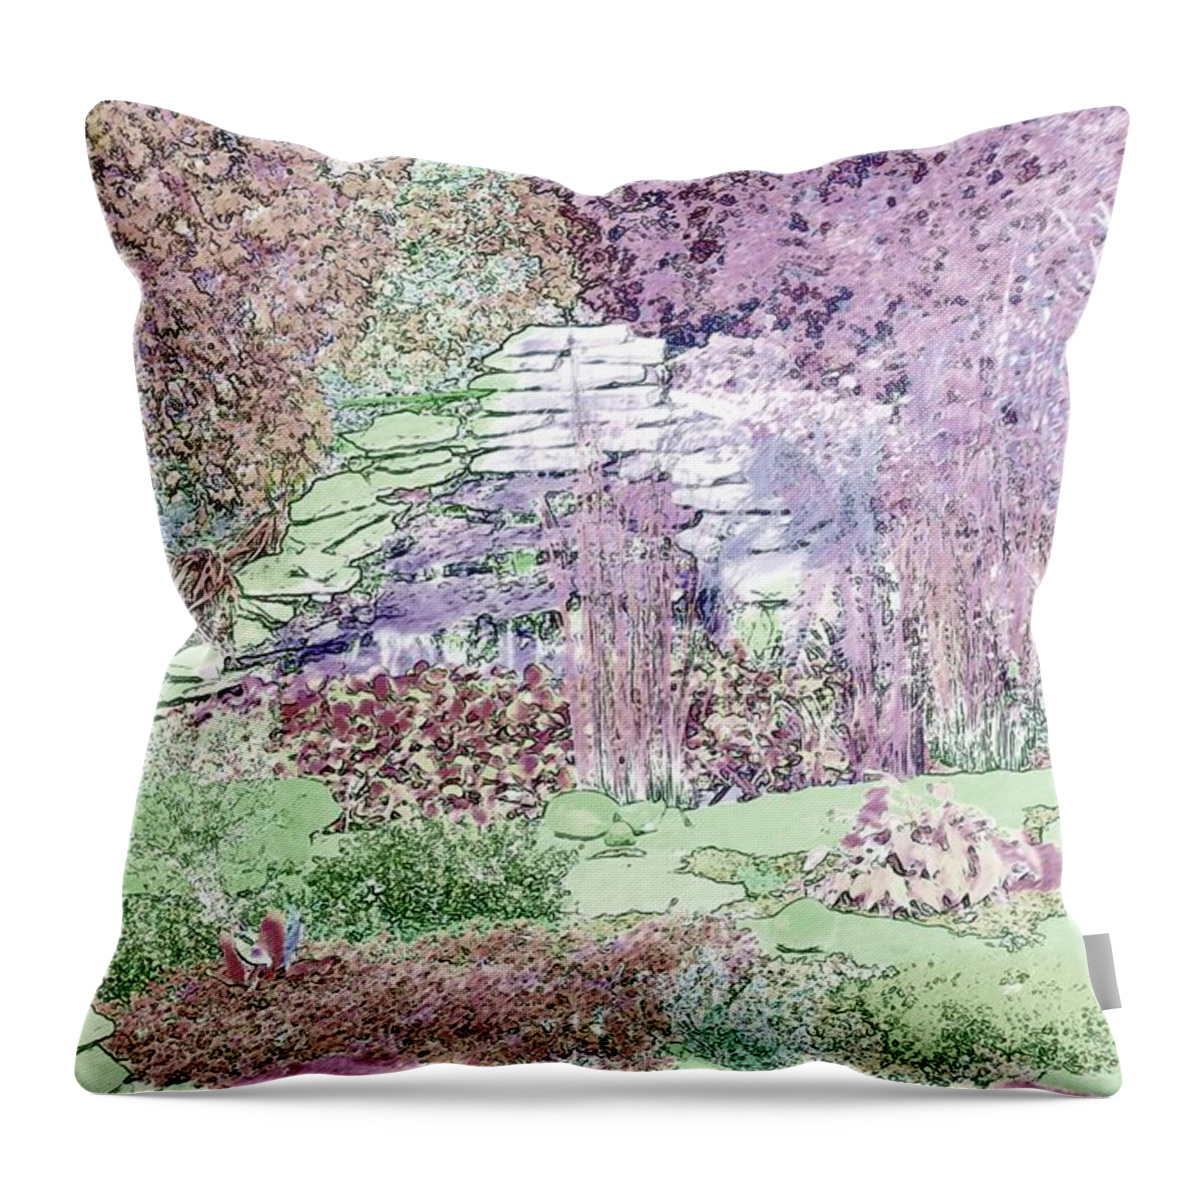 Garden Throw Pillow featuring the digital art Beckie's Magic Garden by Cheryl Charette